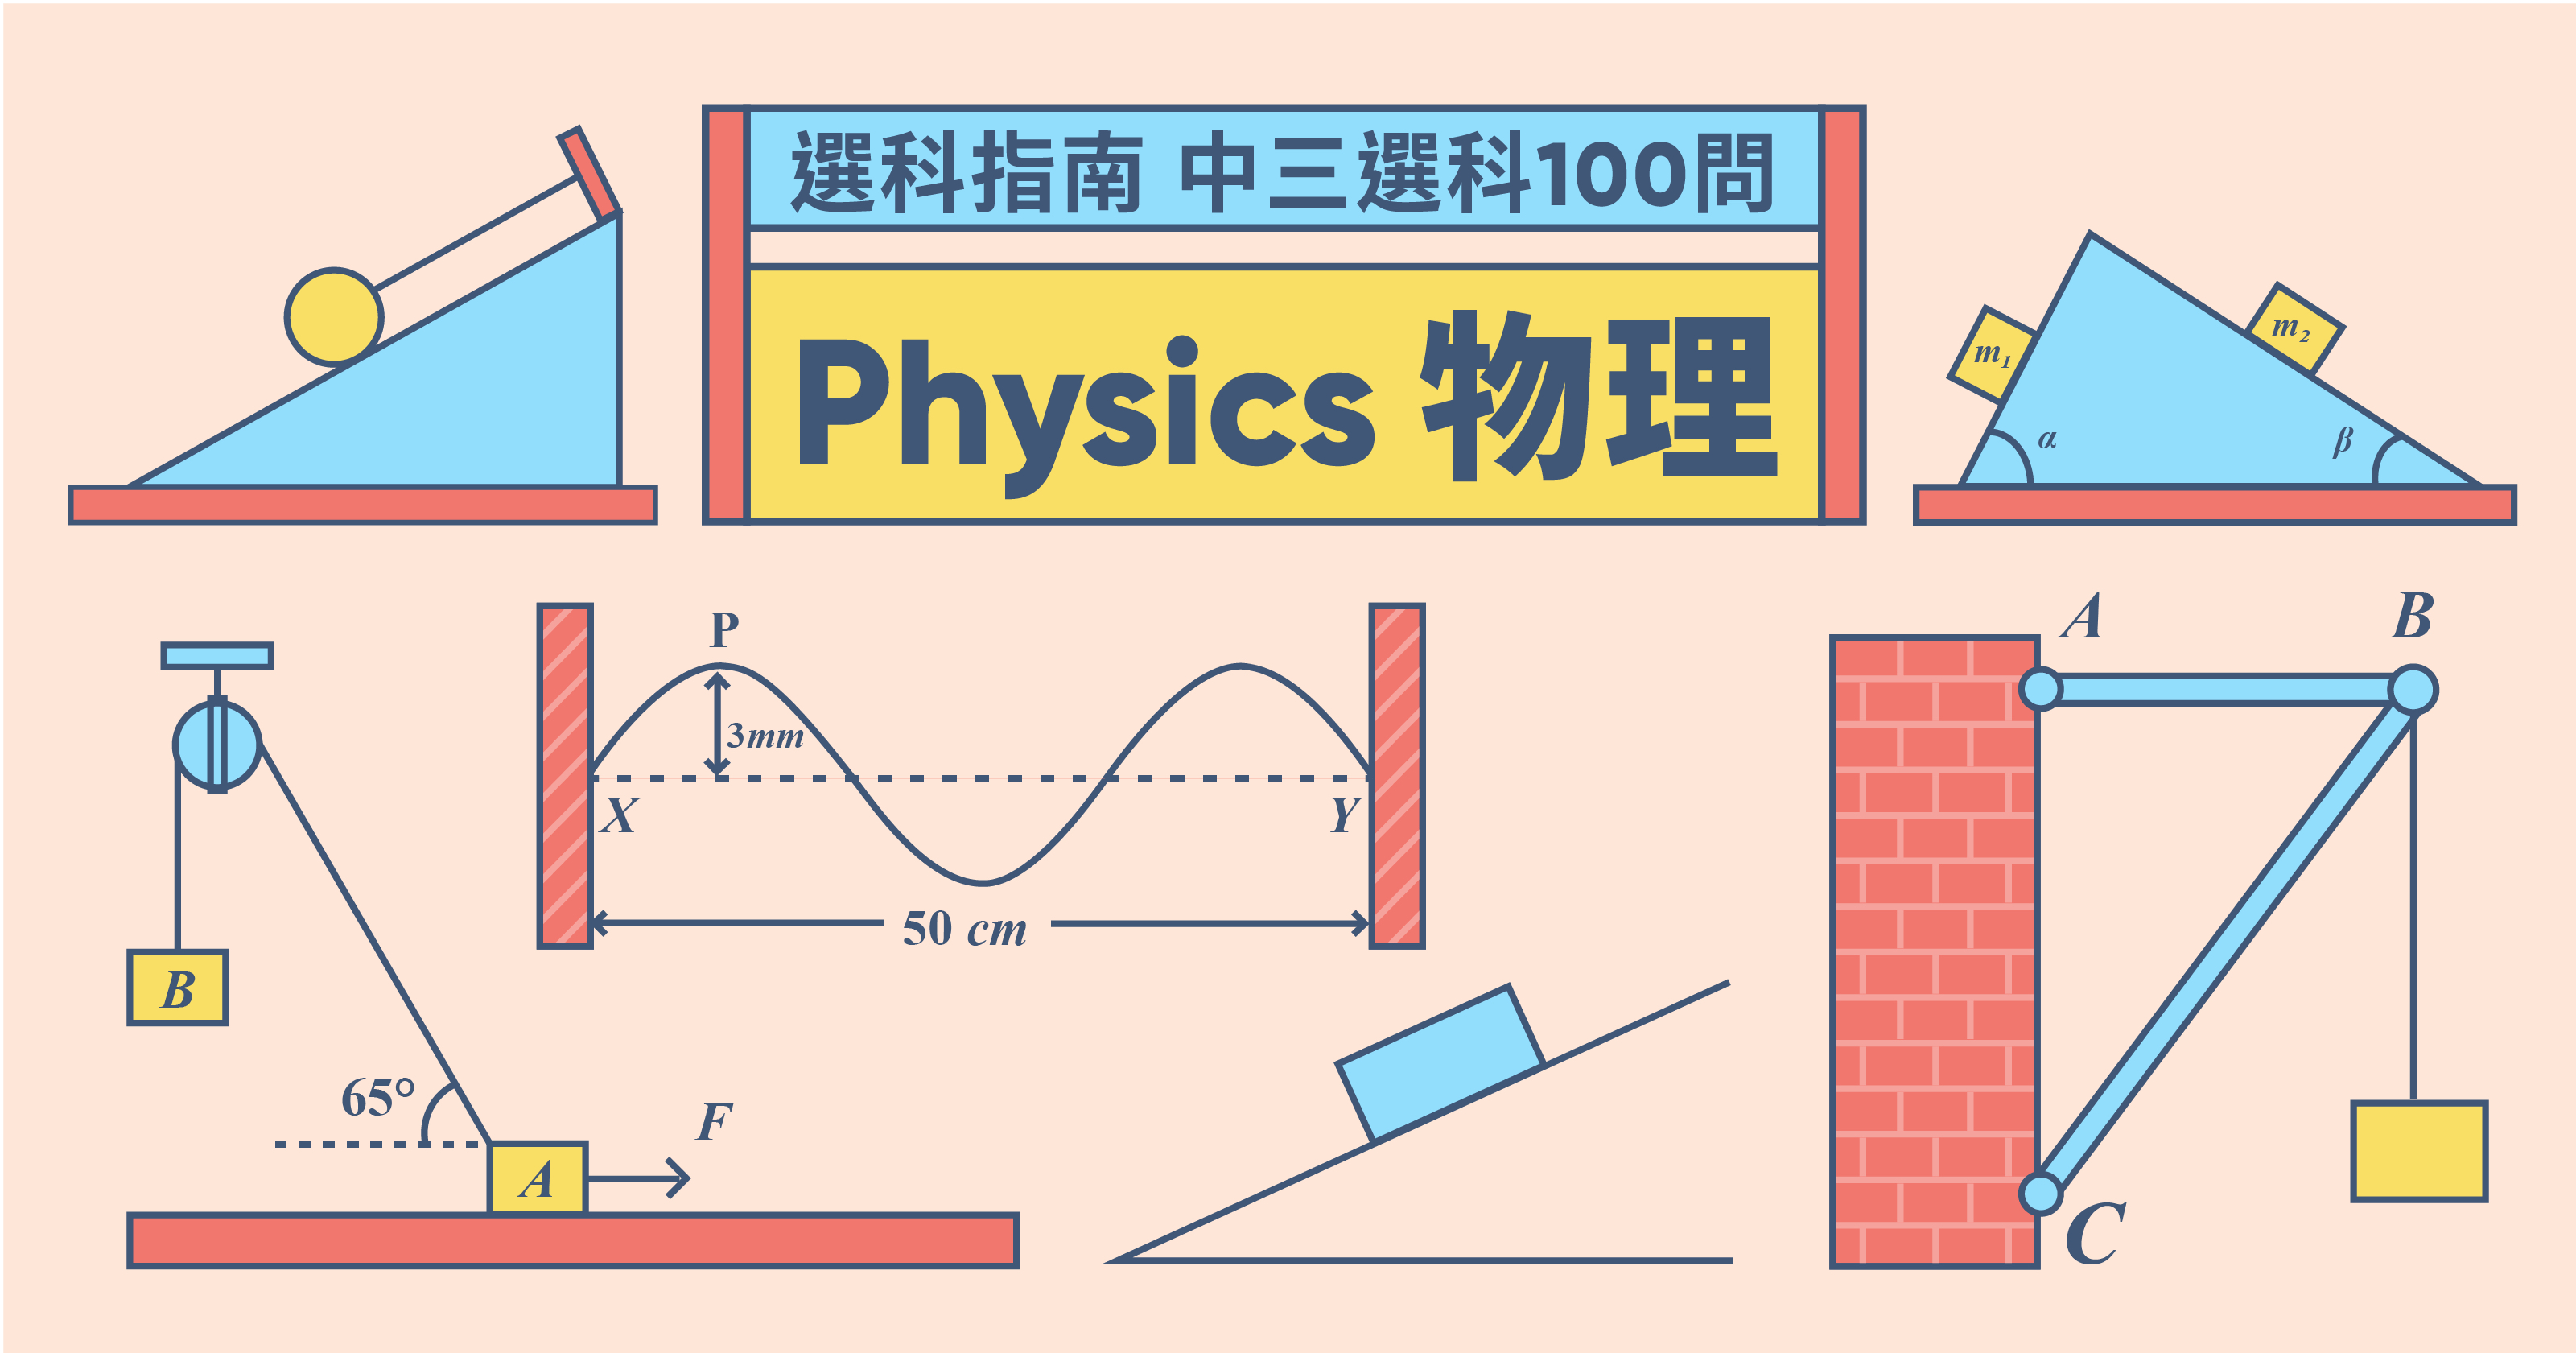 選科指南 中三選科100問 物理科physics